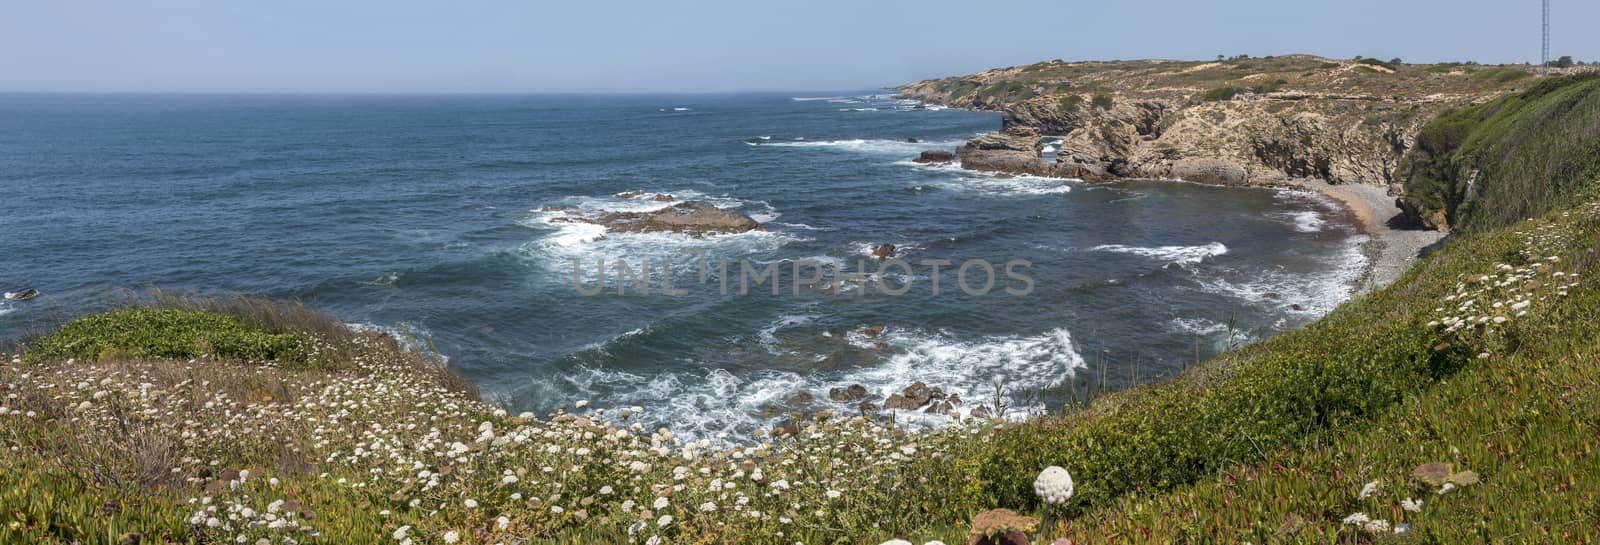 Rocks formations on Alentejo coastline by membio